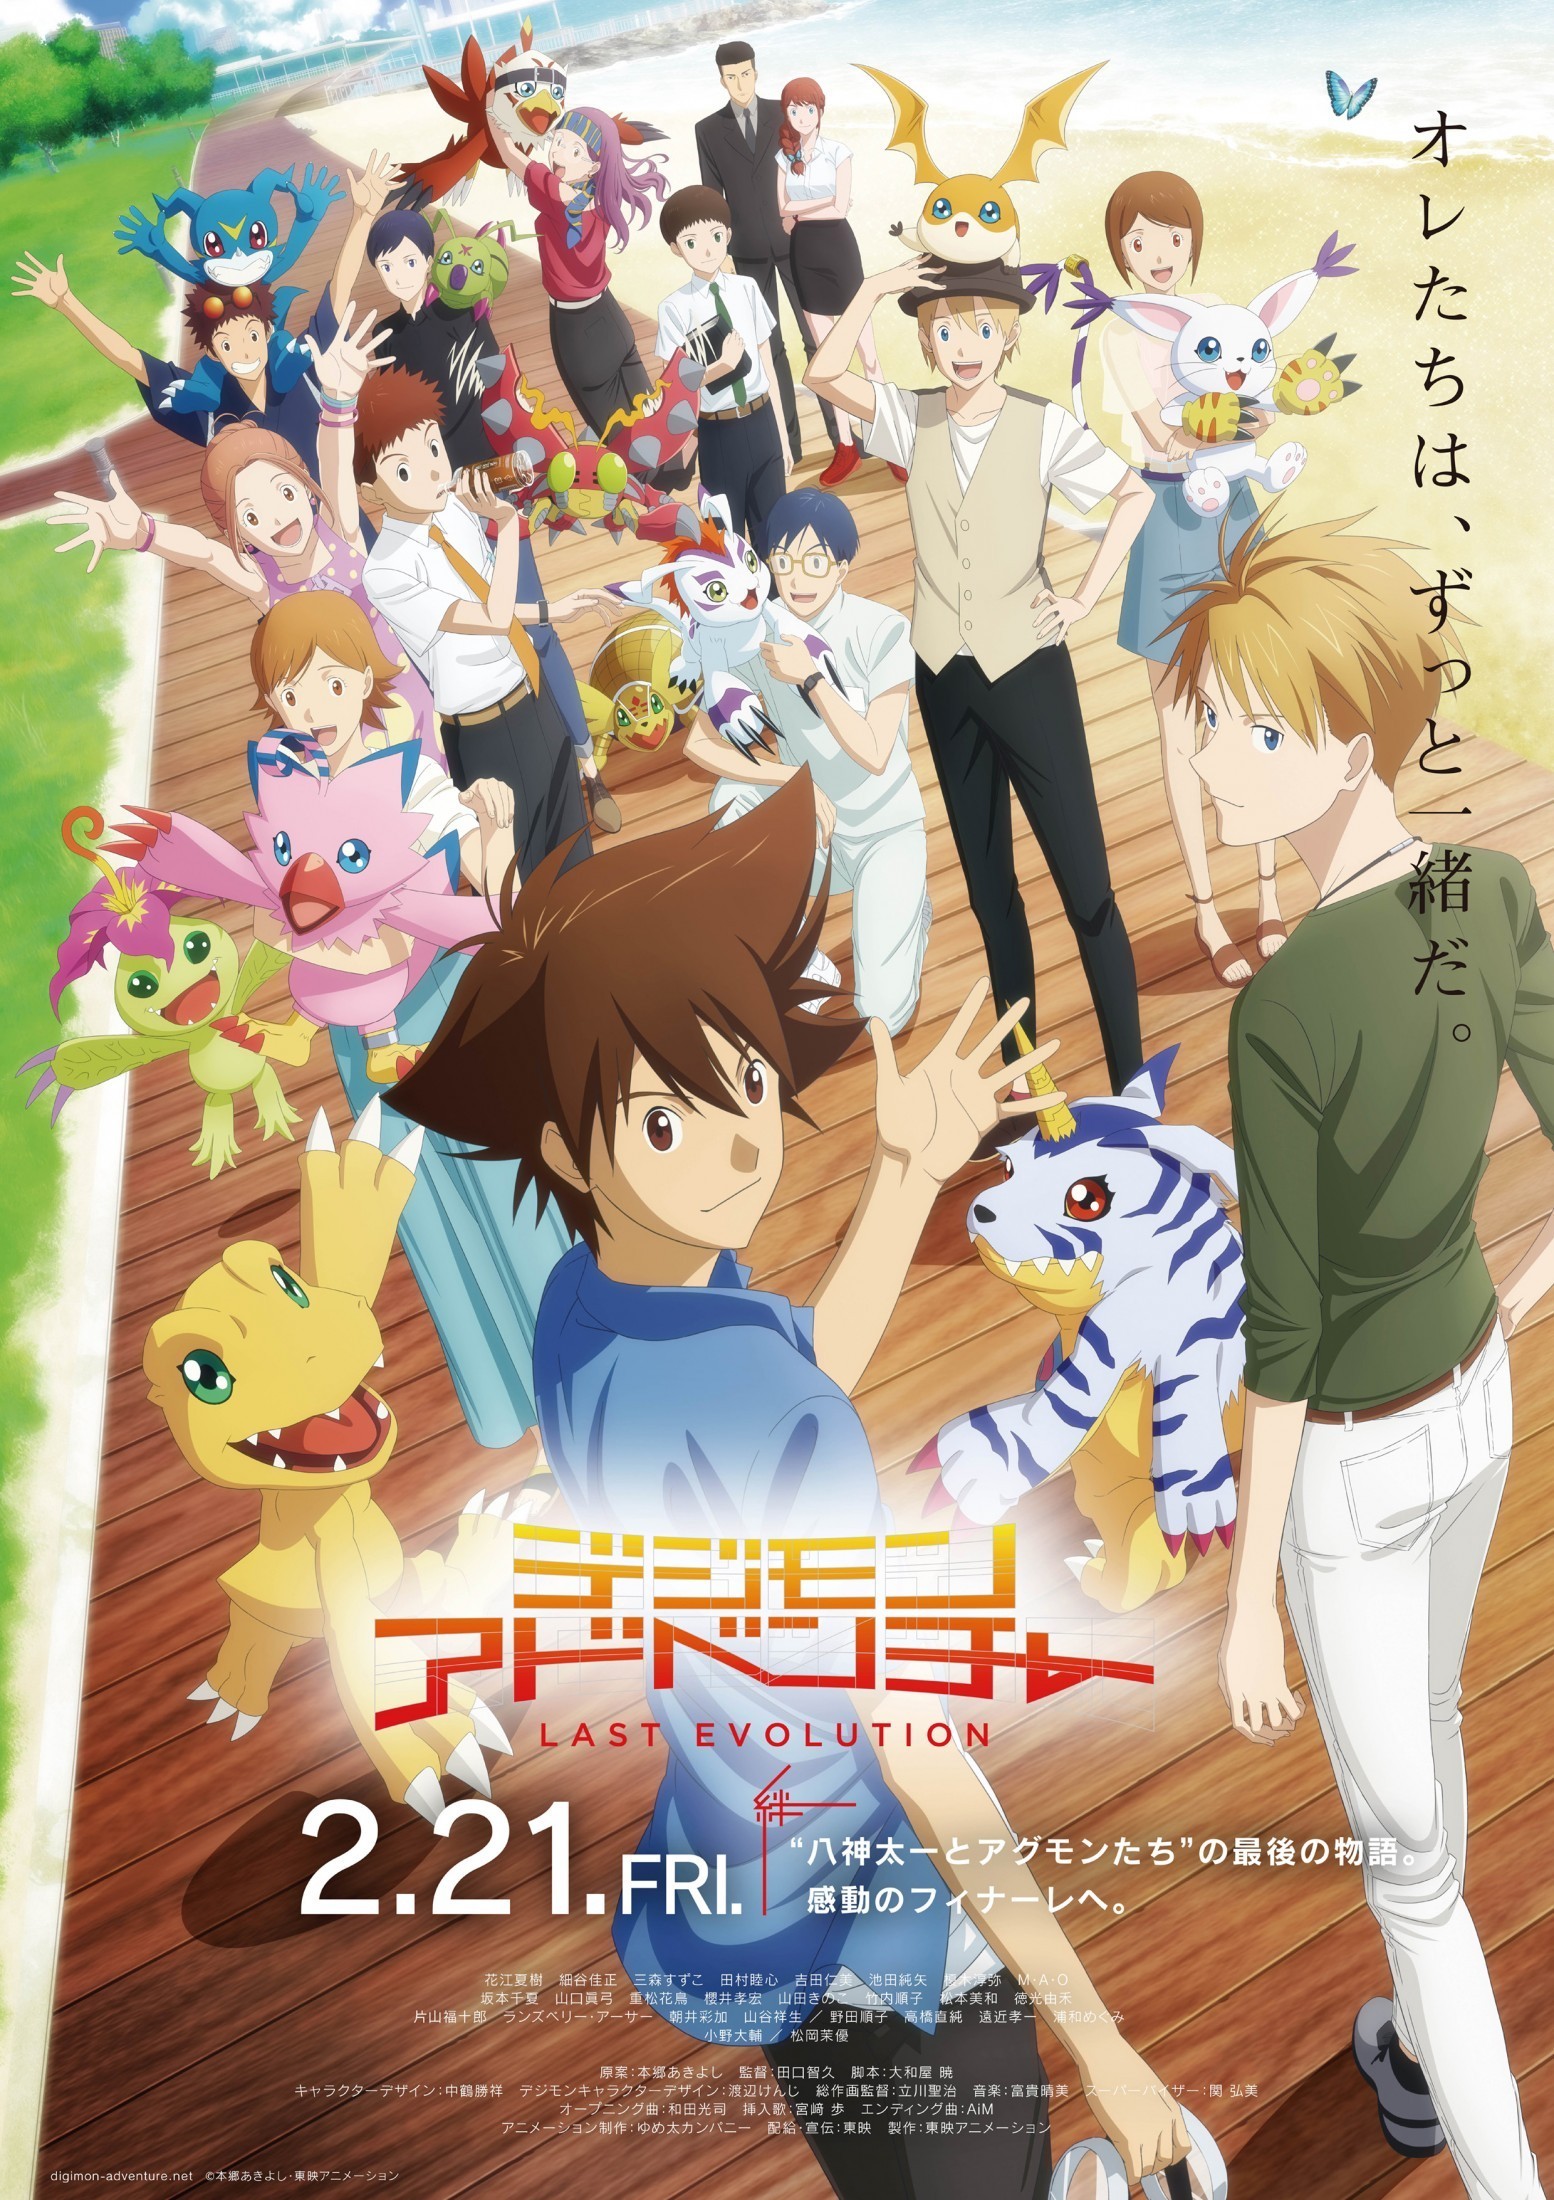 Digimon Adventure Last Evolution Kizuna Poster.jpg